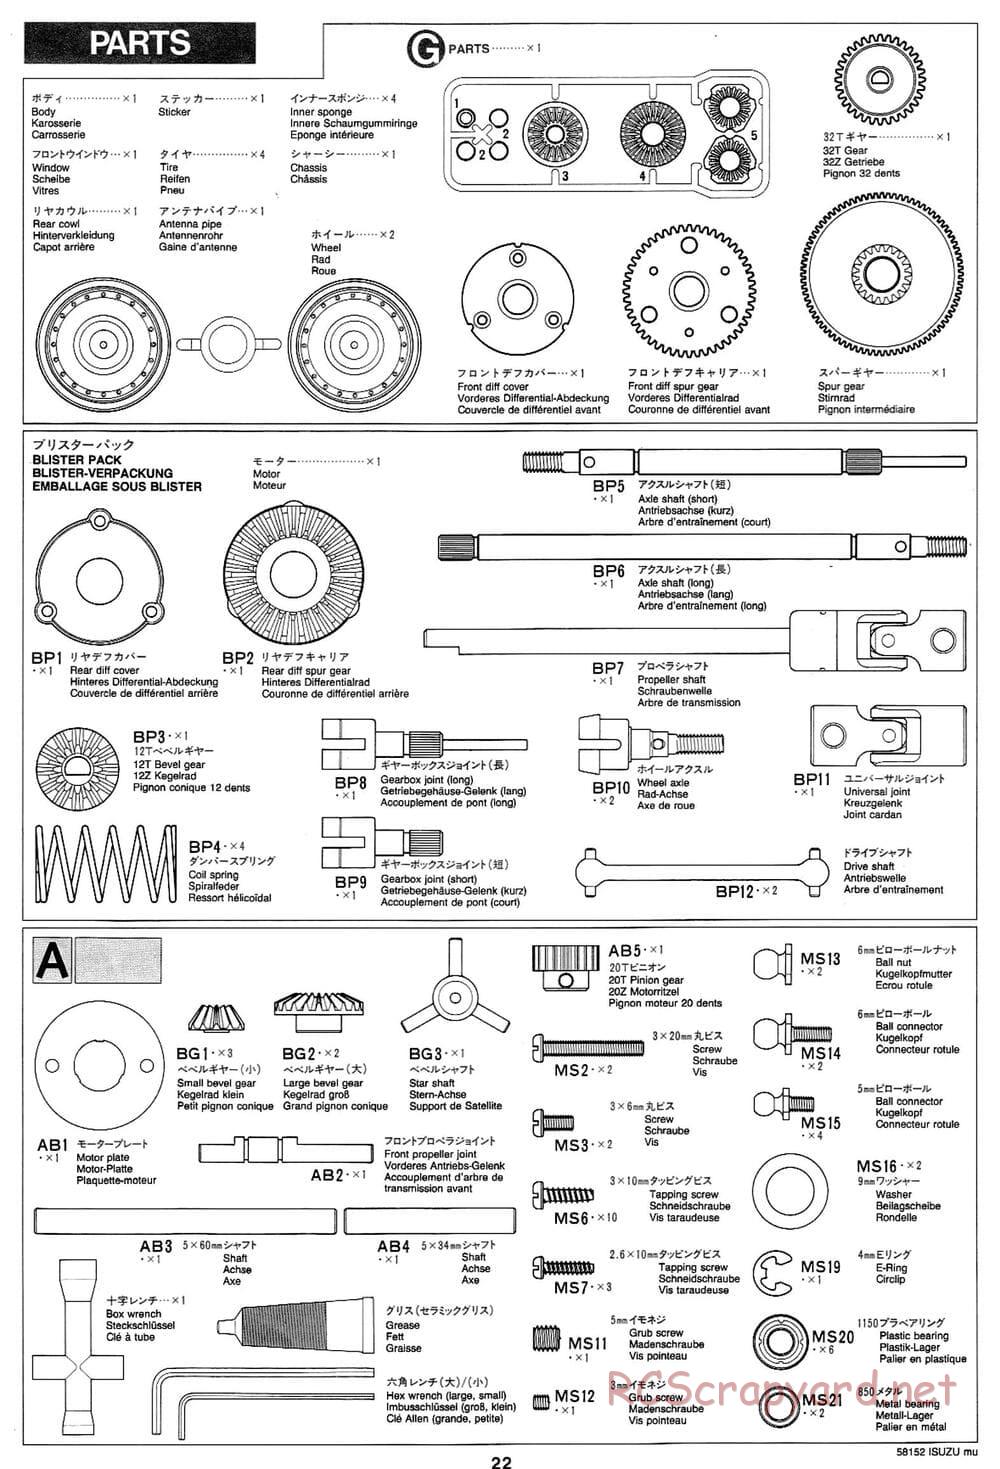 Tamiya - Isuzu Mu - CC-01 Chassis - Manual - Page 22